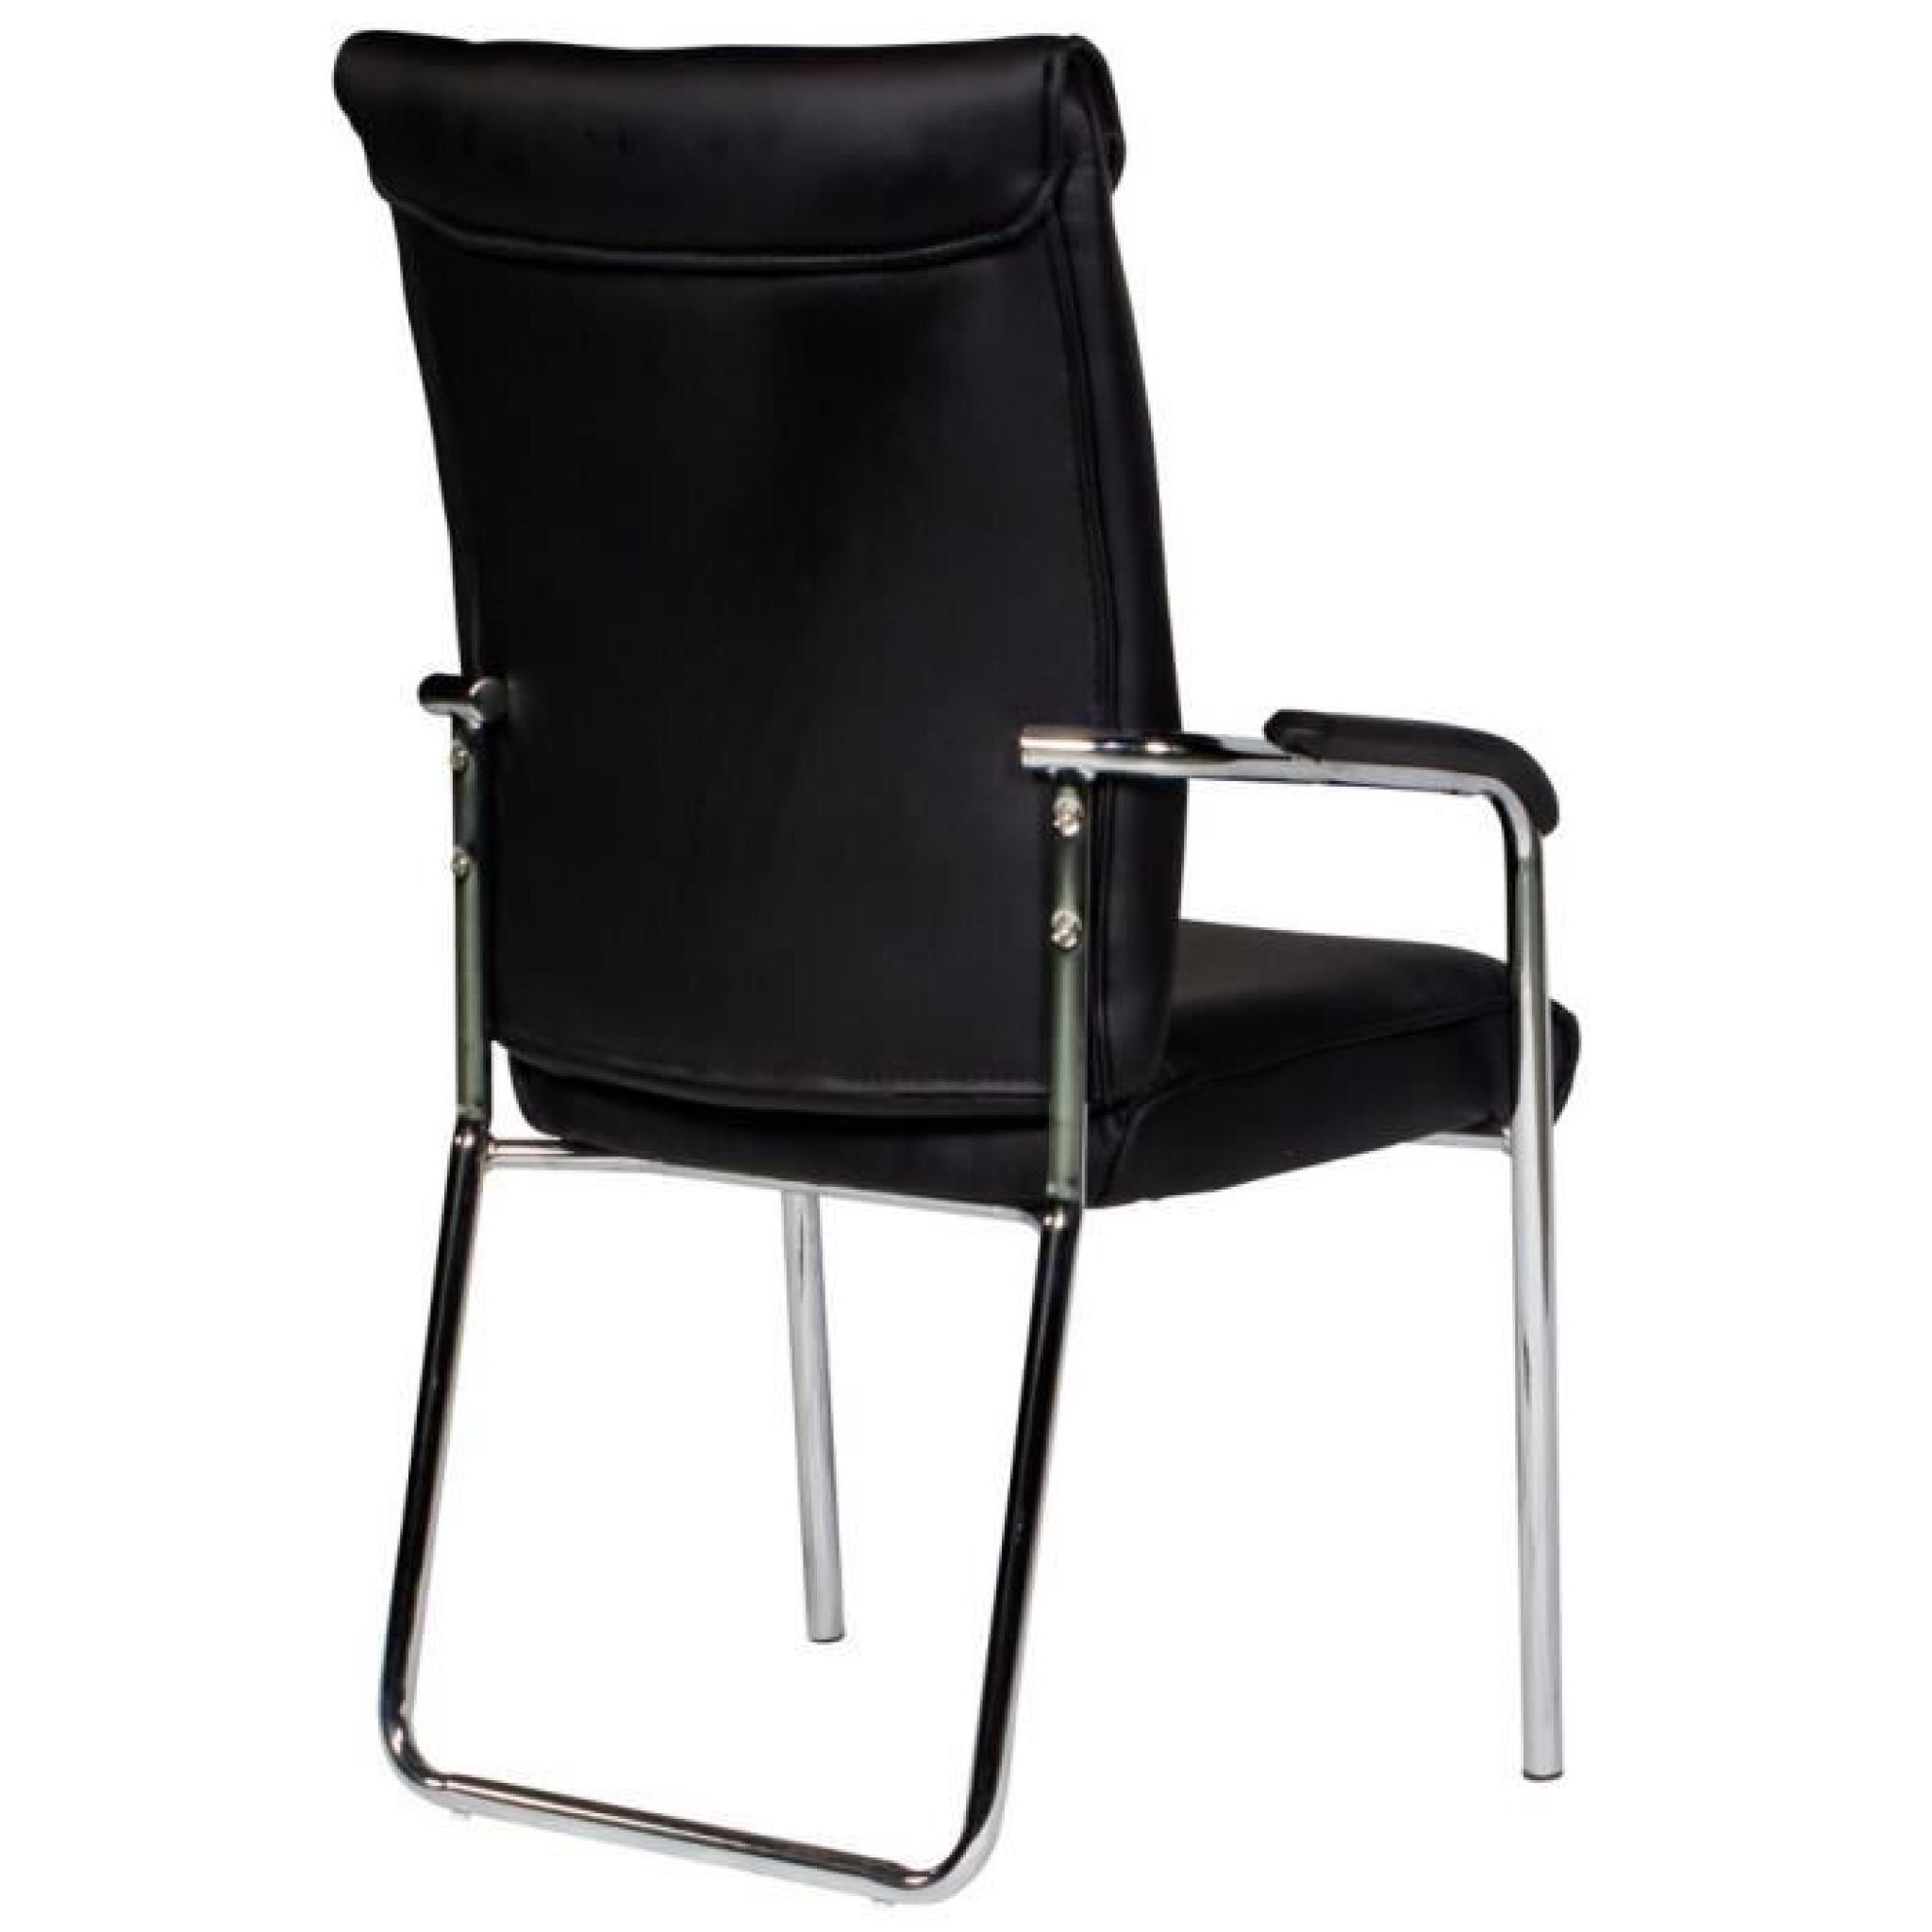 Chaise noir et acier chromé ultra moderne pas cher